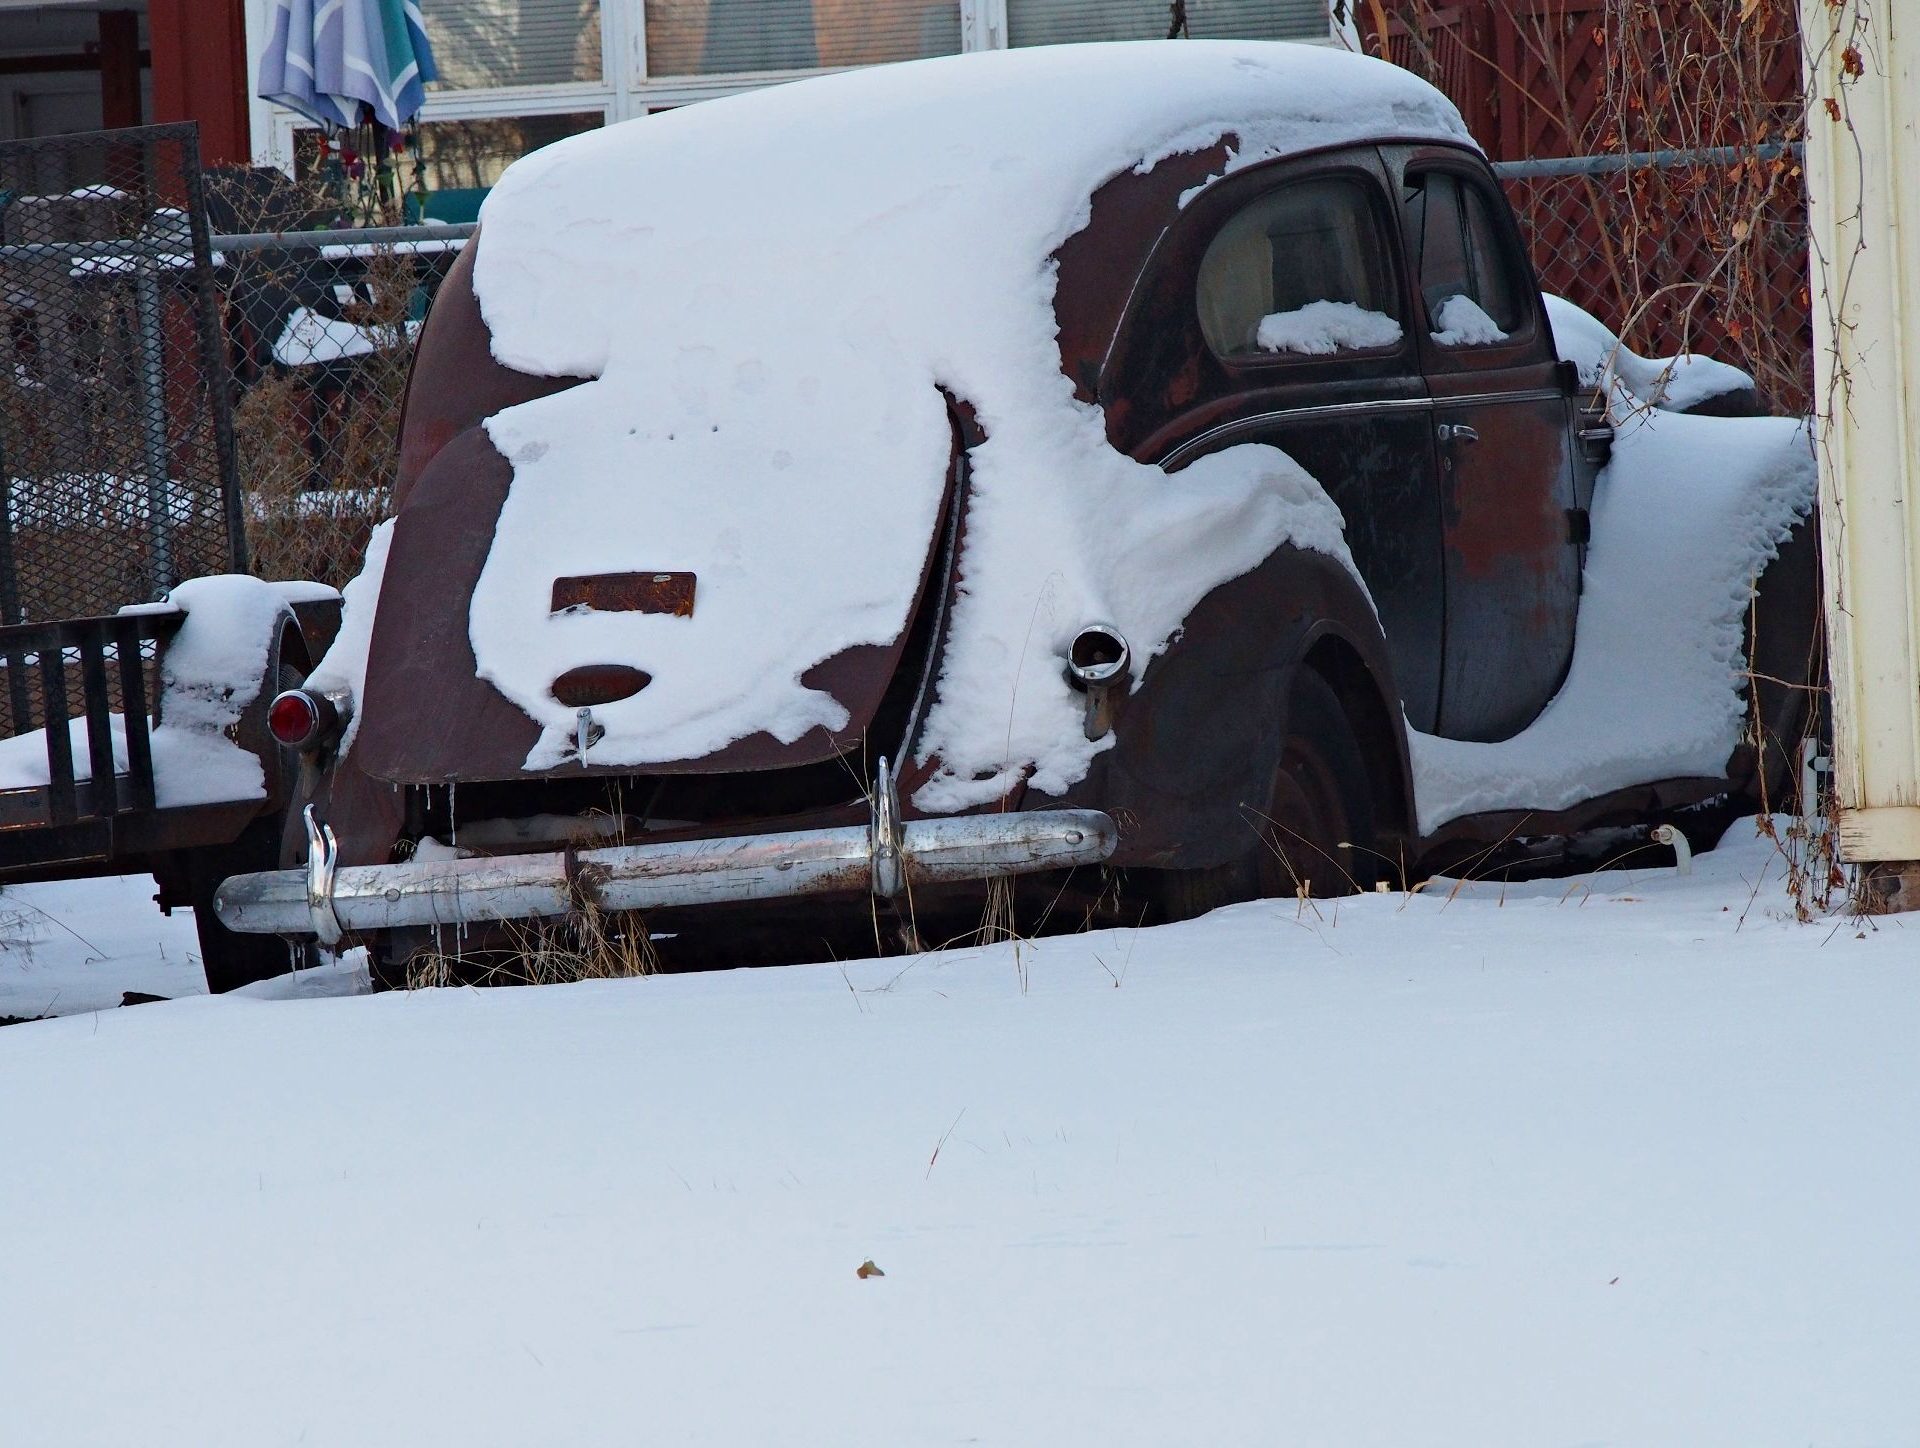 Old Car in snow